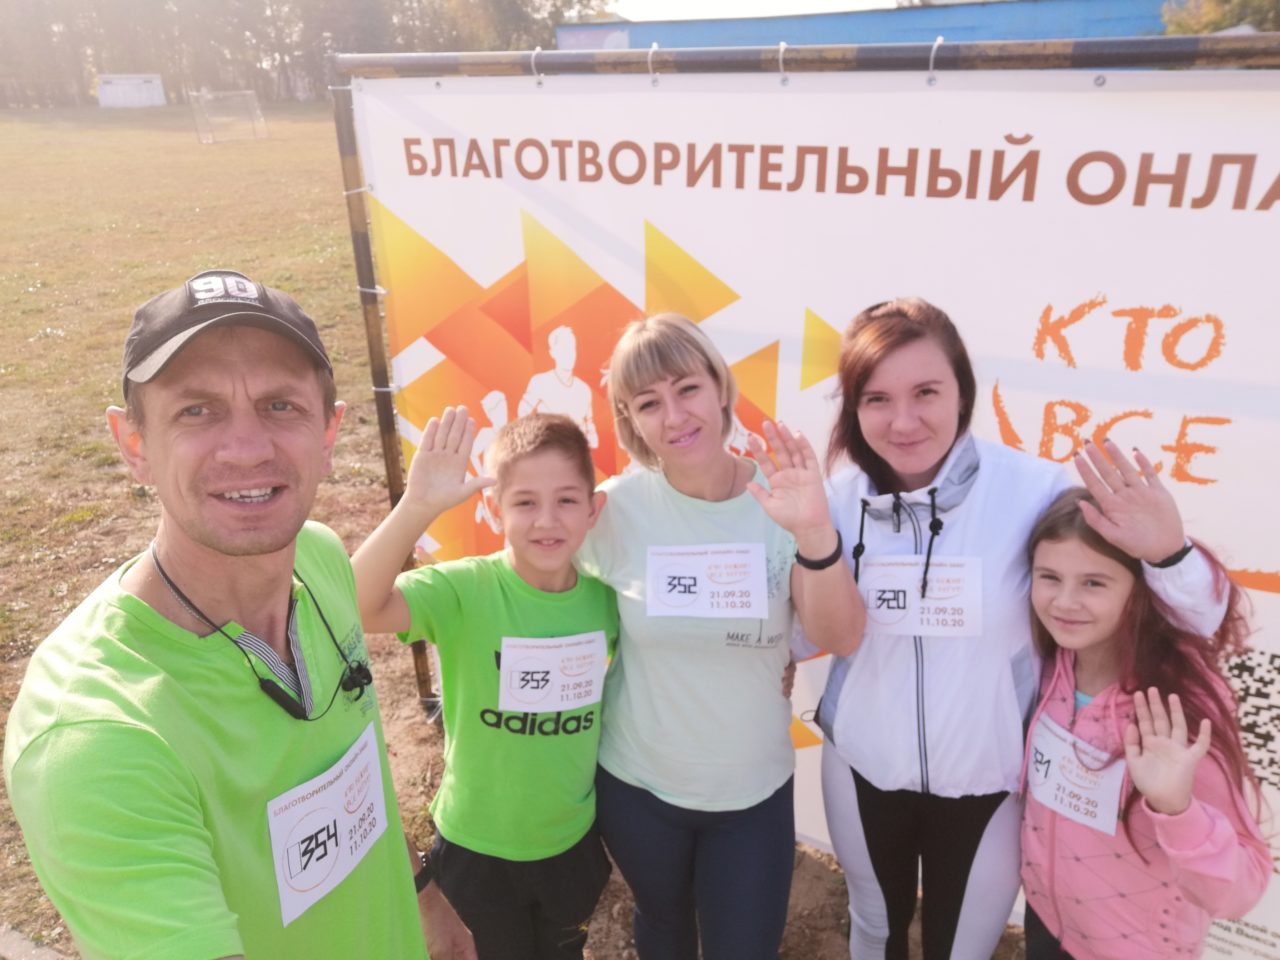 Участники благотворительного забега «Кто бежит? Все бегут!» собрали для братьев Ворониных почти 190 тысяч рублей